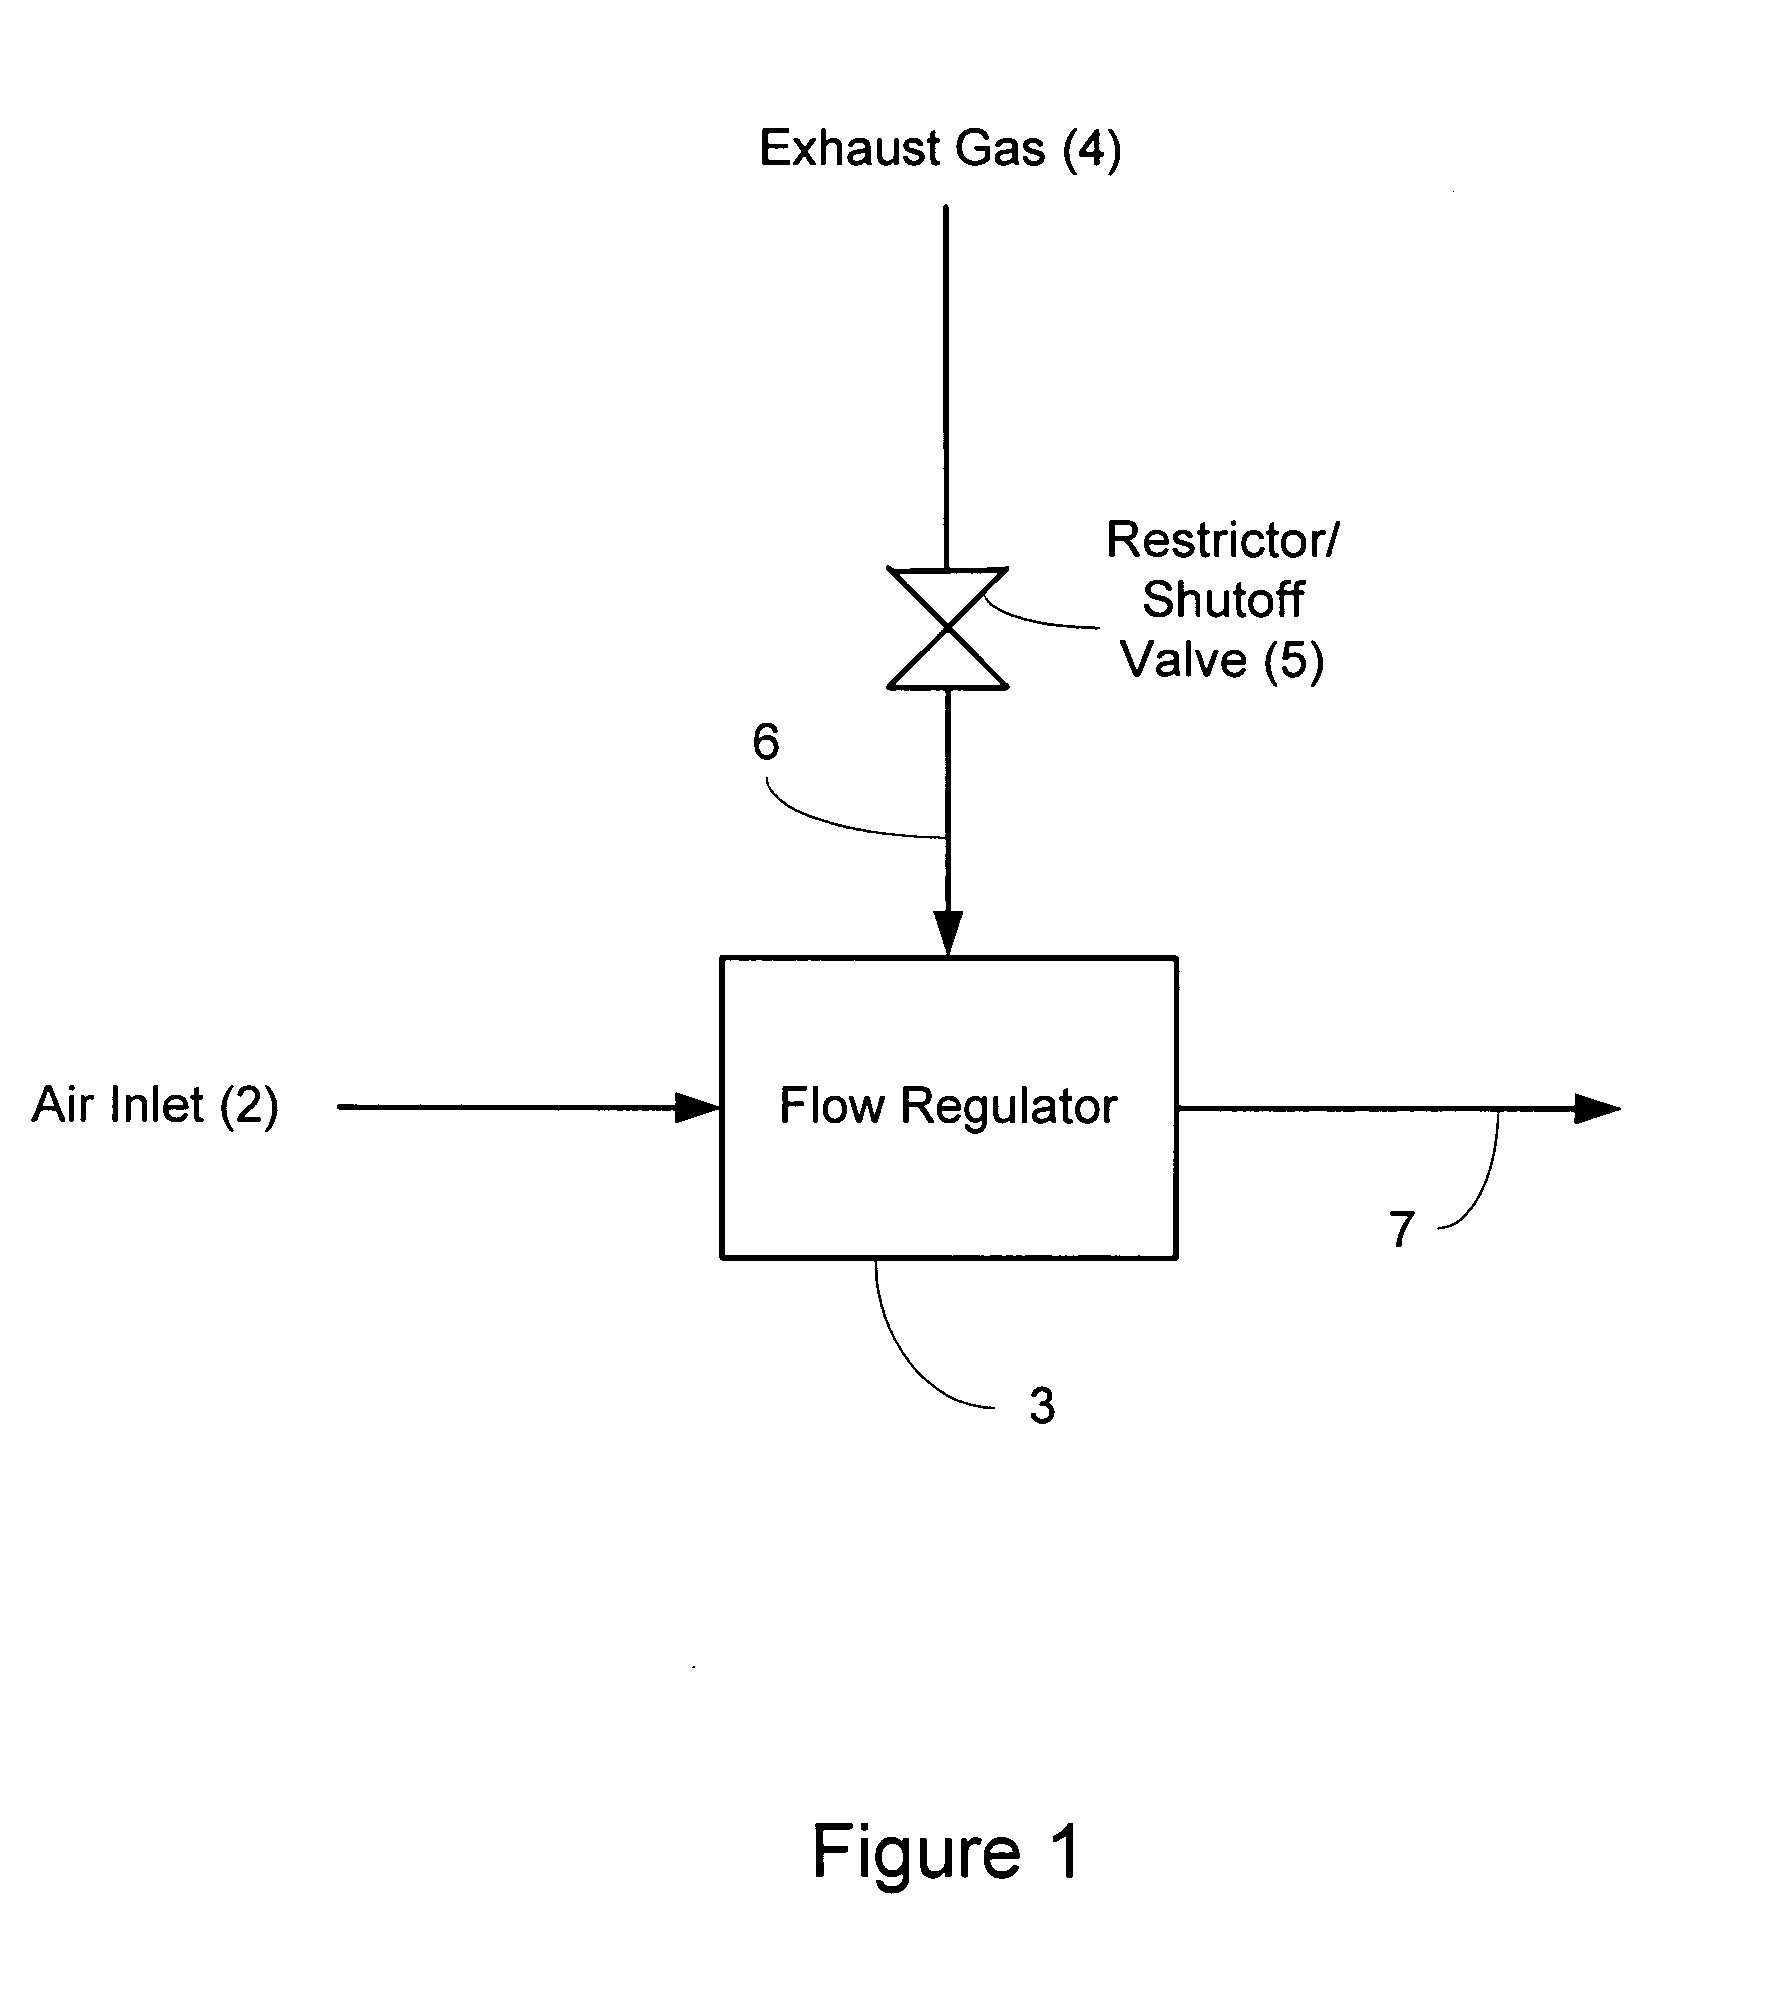 Sequential control valve